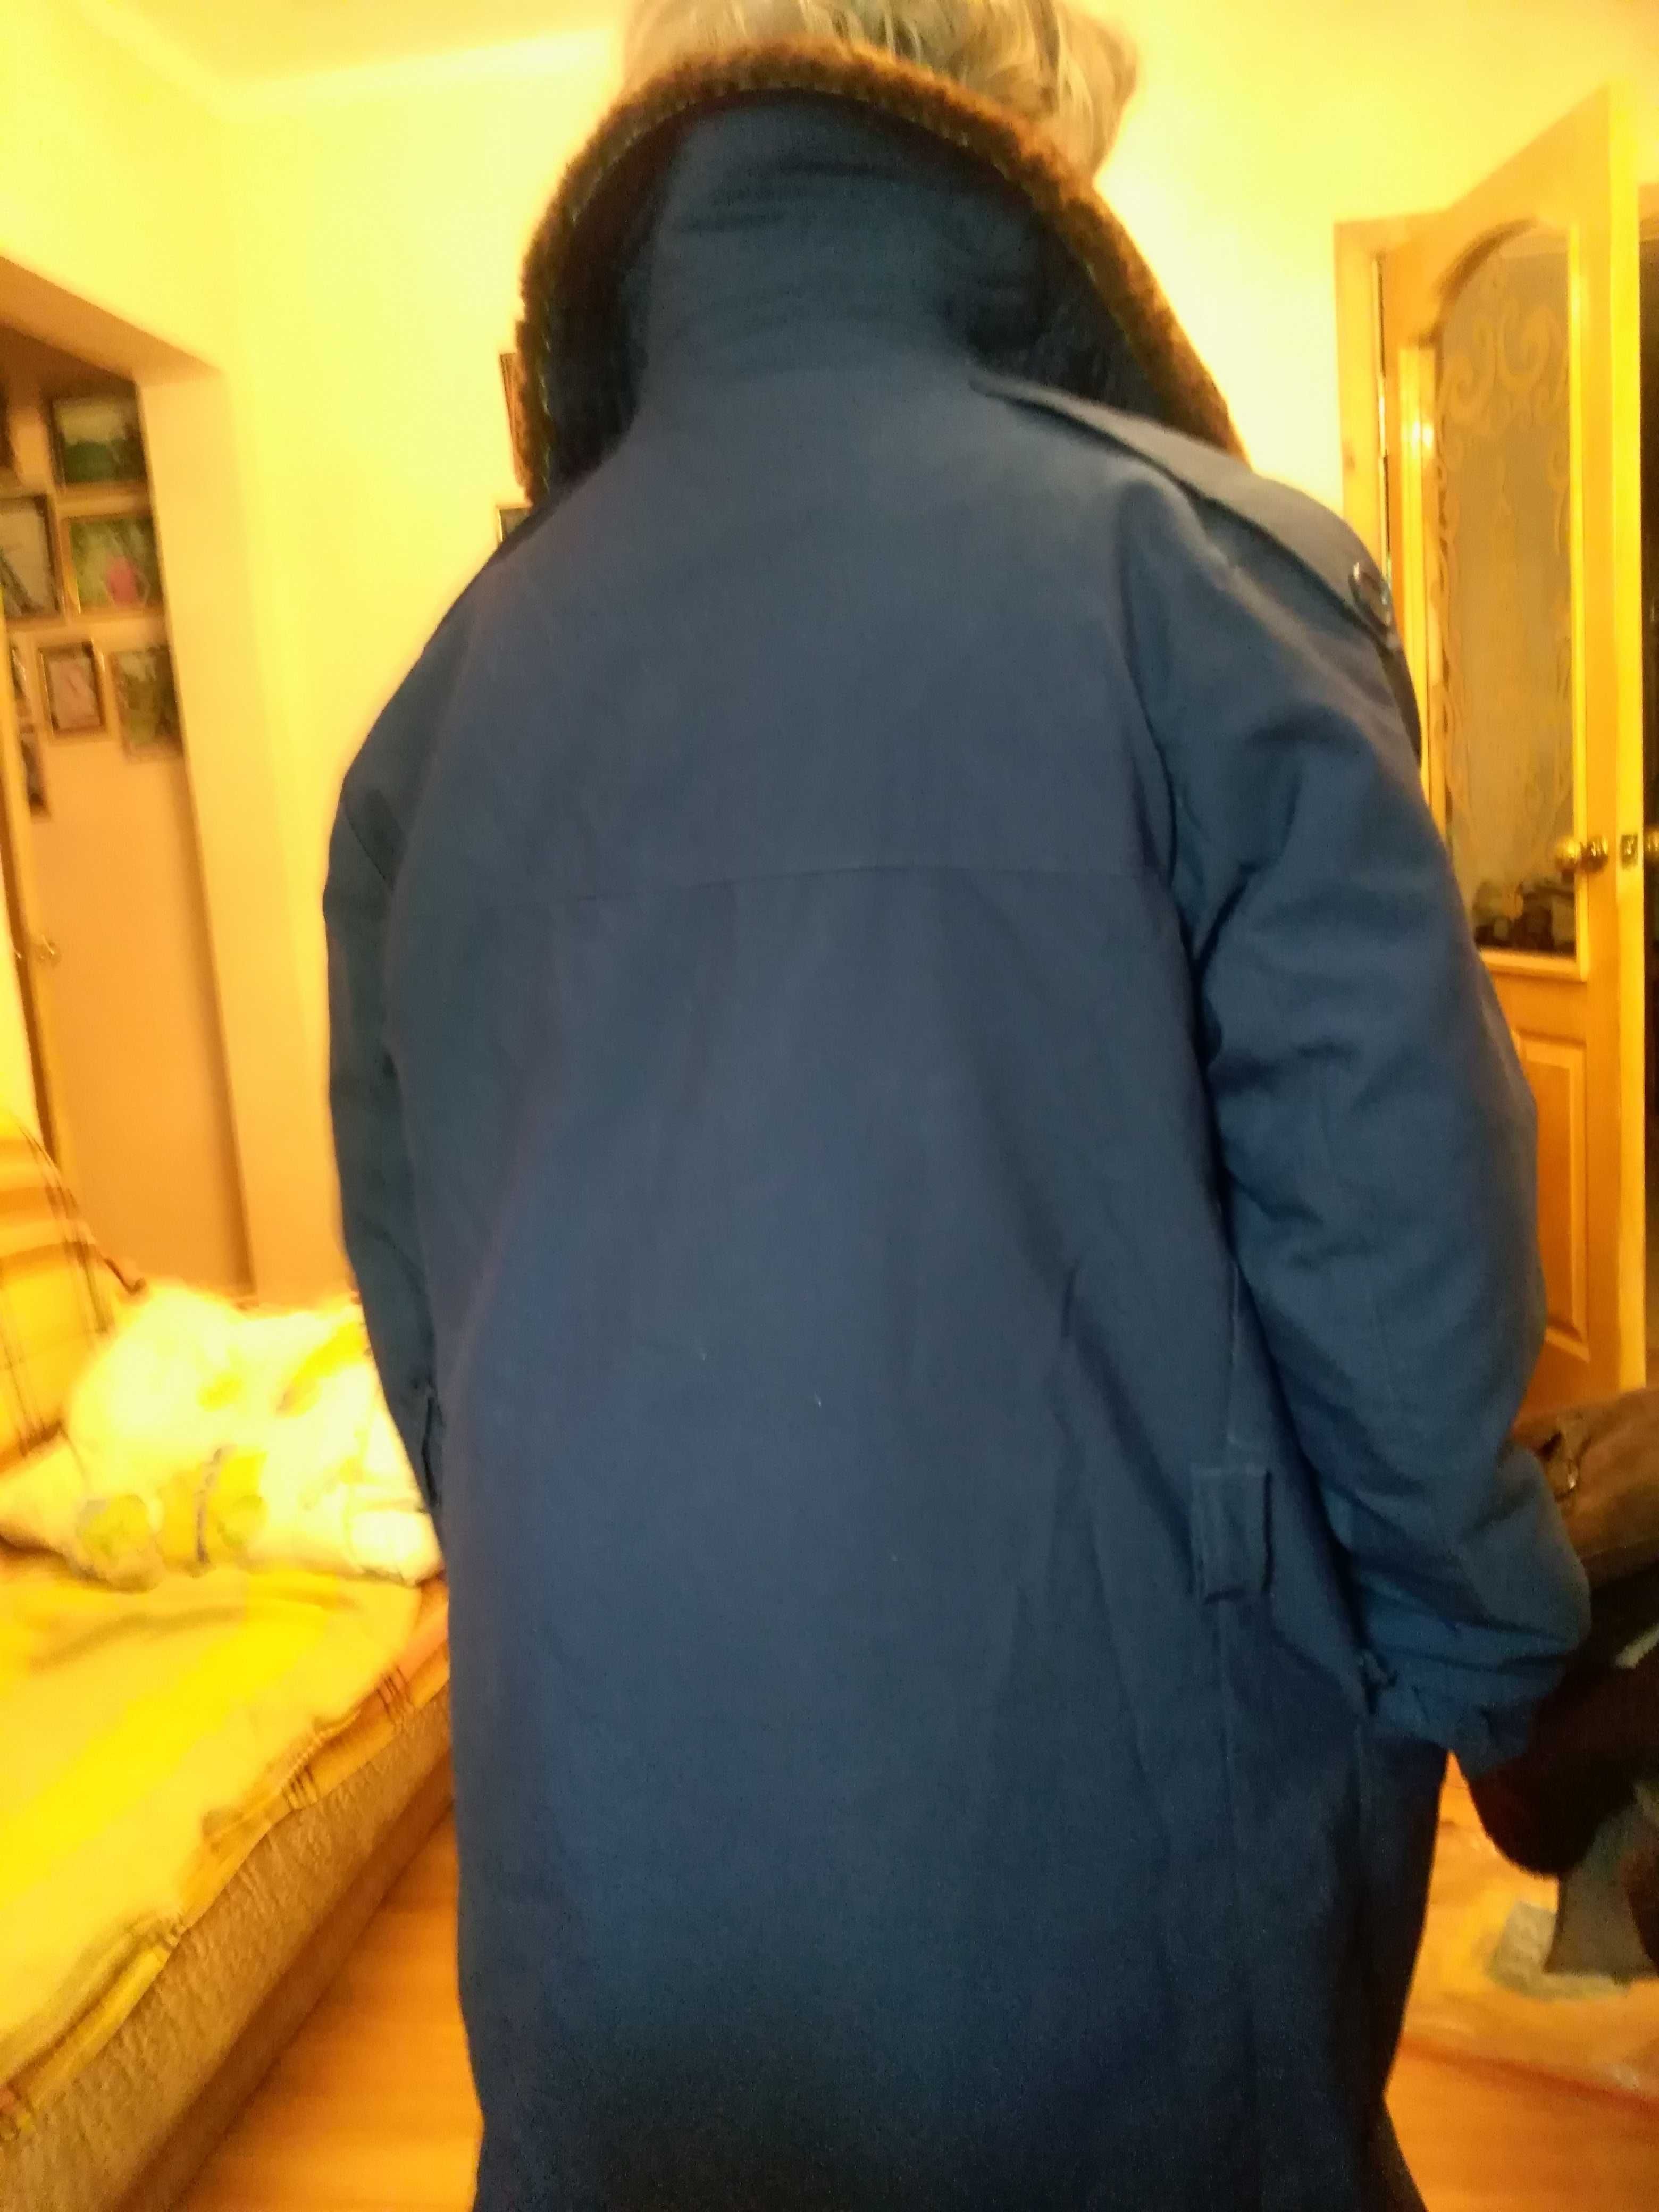 Полушубок-куртка, цигейка, верх темно-синяя плащевка, удлиненная